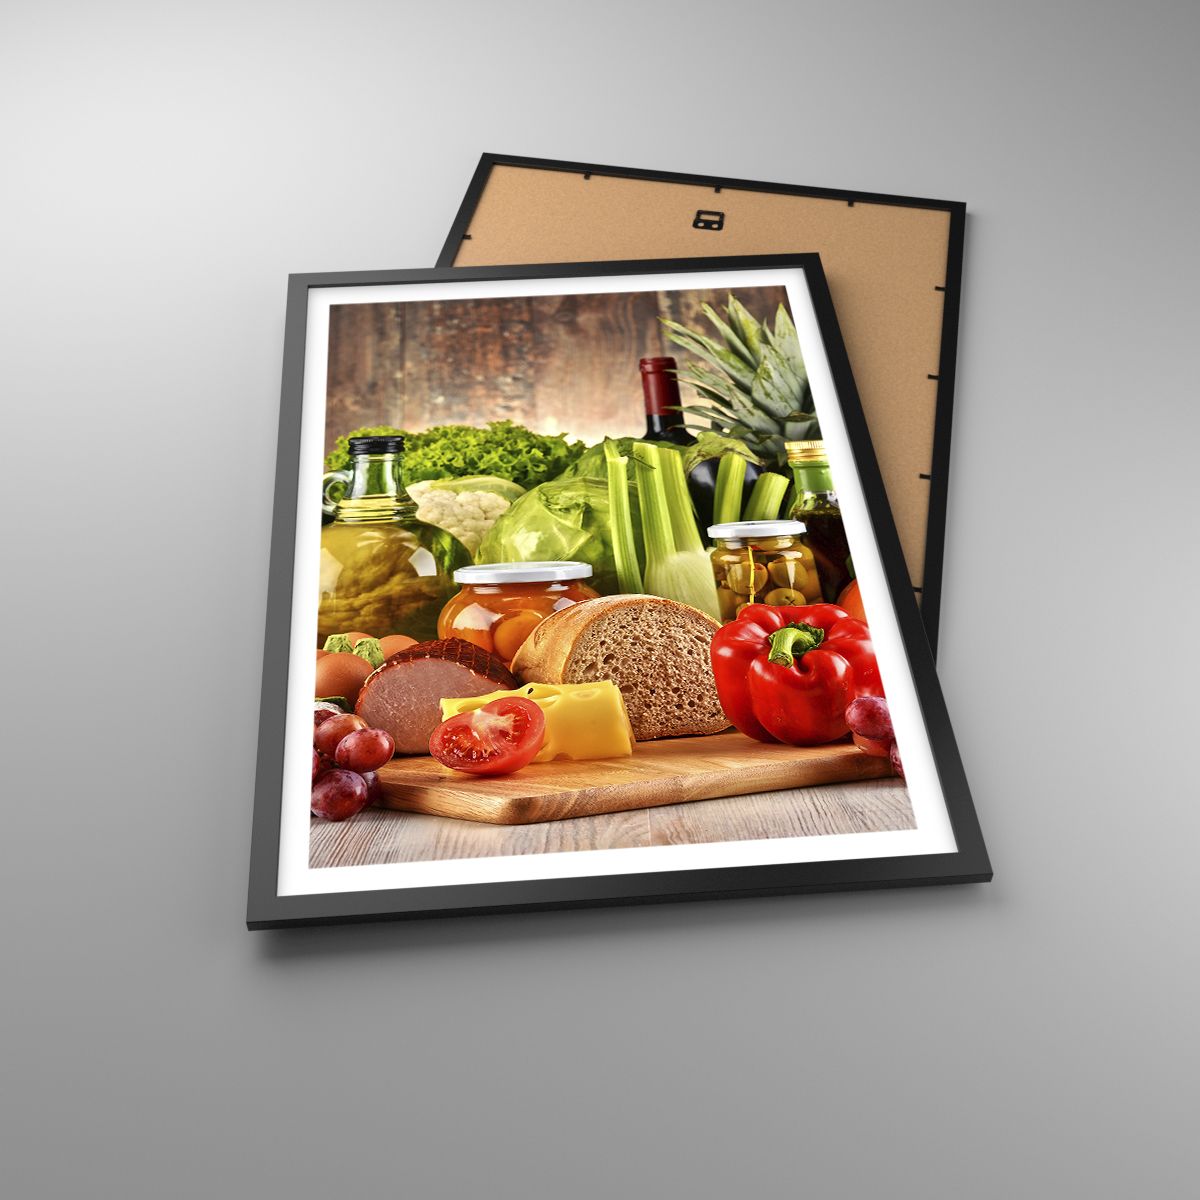 Affiche La Gastronomie, Affiche Des Légumes, Affiche Fruit, Affiche Pain, Affiche Cuisine